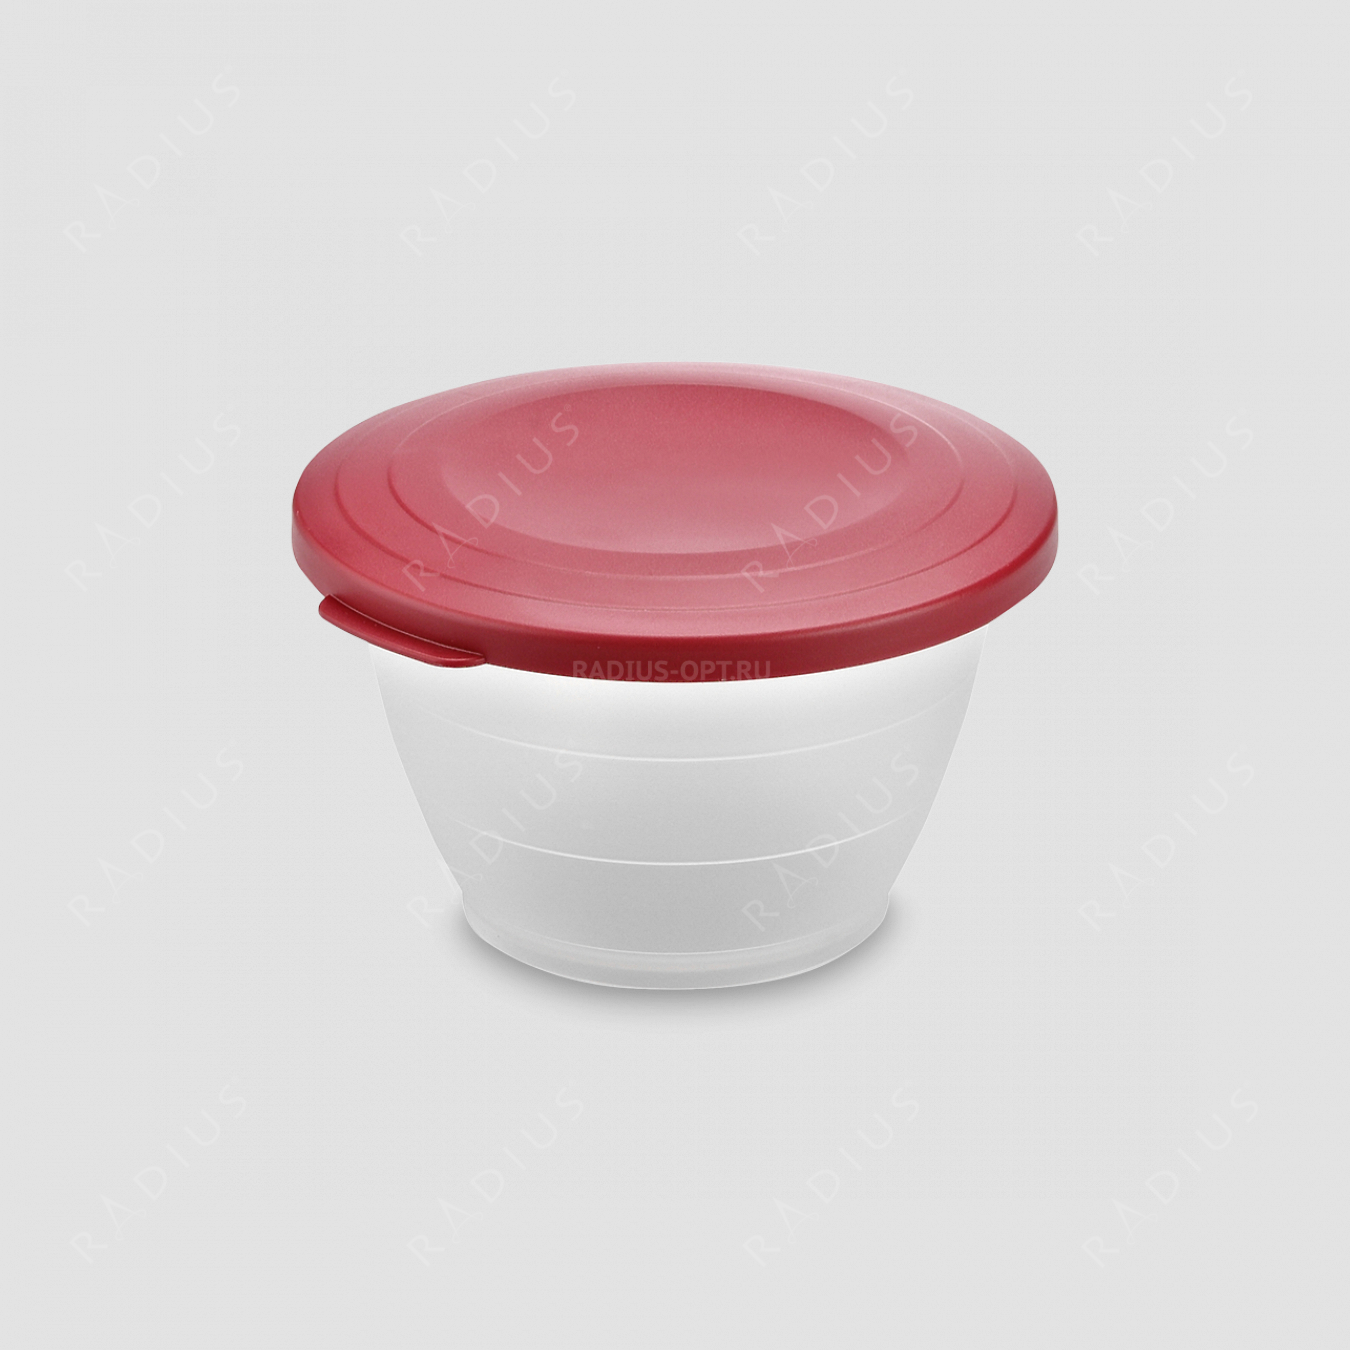 Емкость для салата с крышкой, объем 0,6 л, диаметр 13 см, цвет - красный, серия Plastic tools, Westmark, Германия